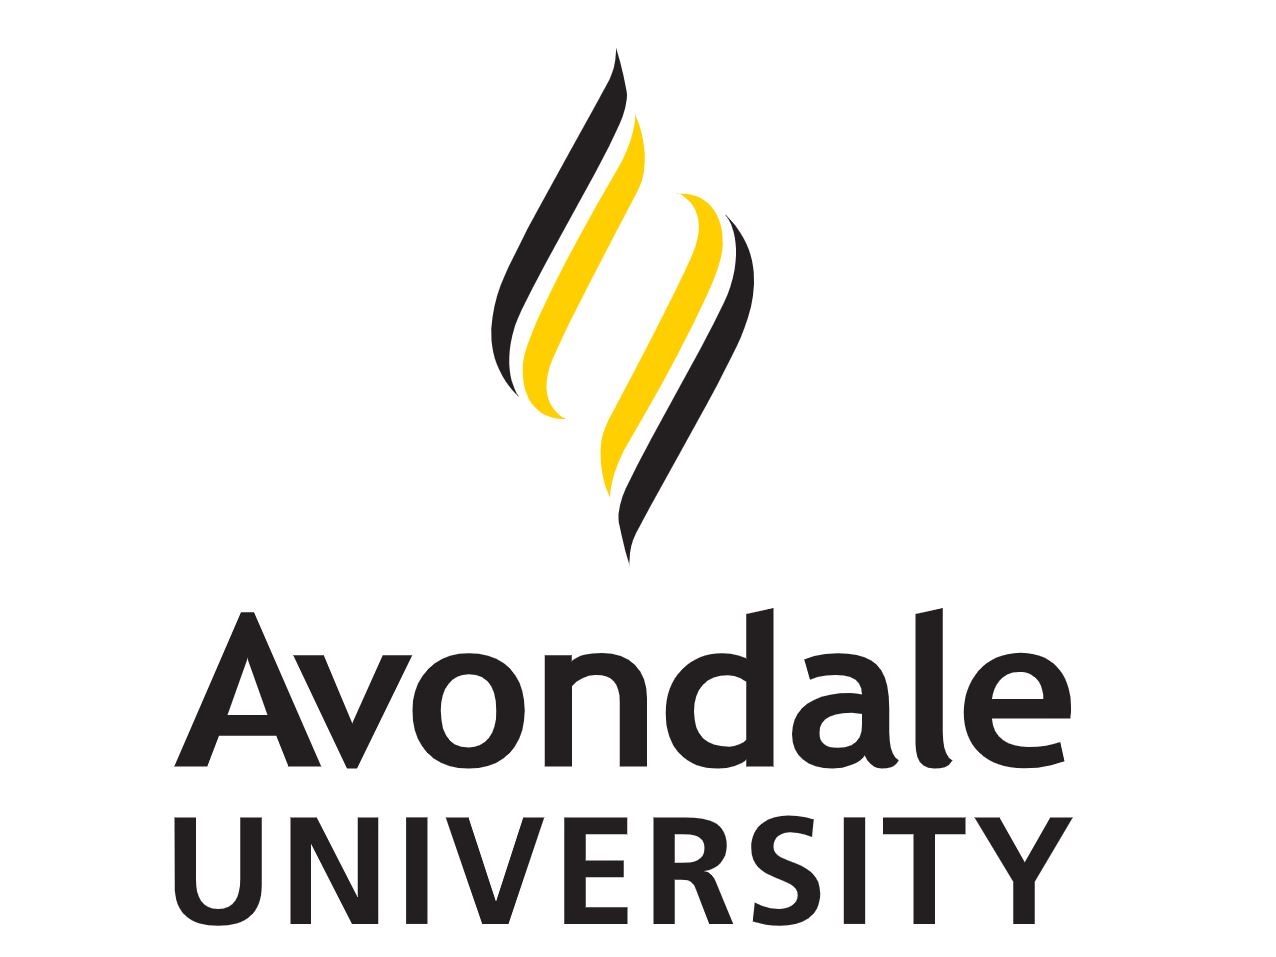 Avondale University logo.JPG